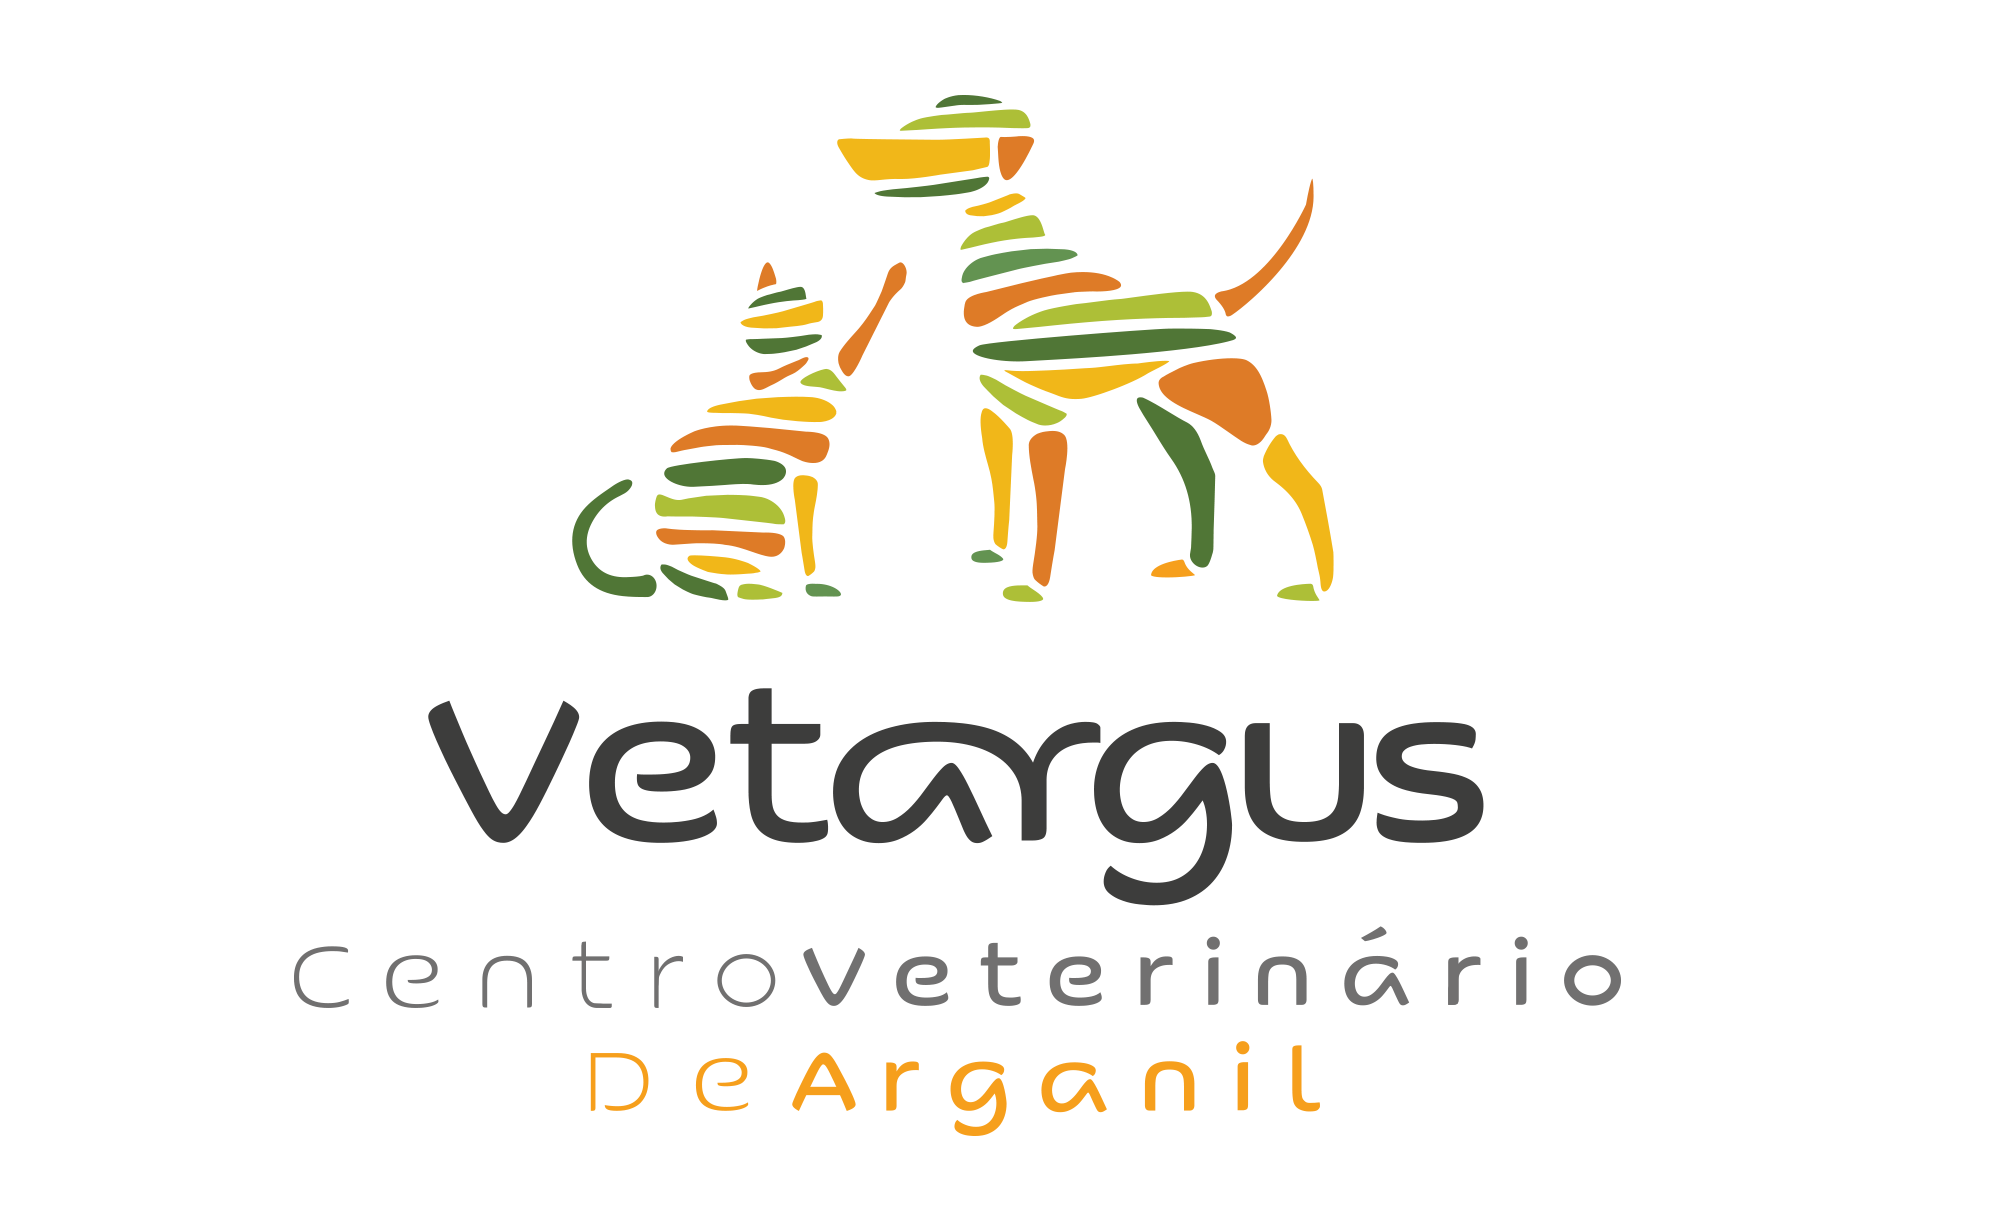 Vetargus – Centro Vet. de Arganil